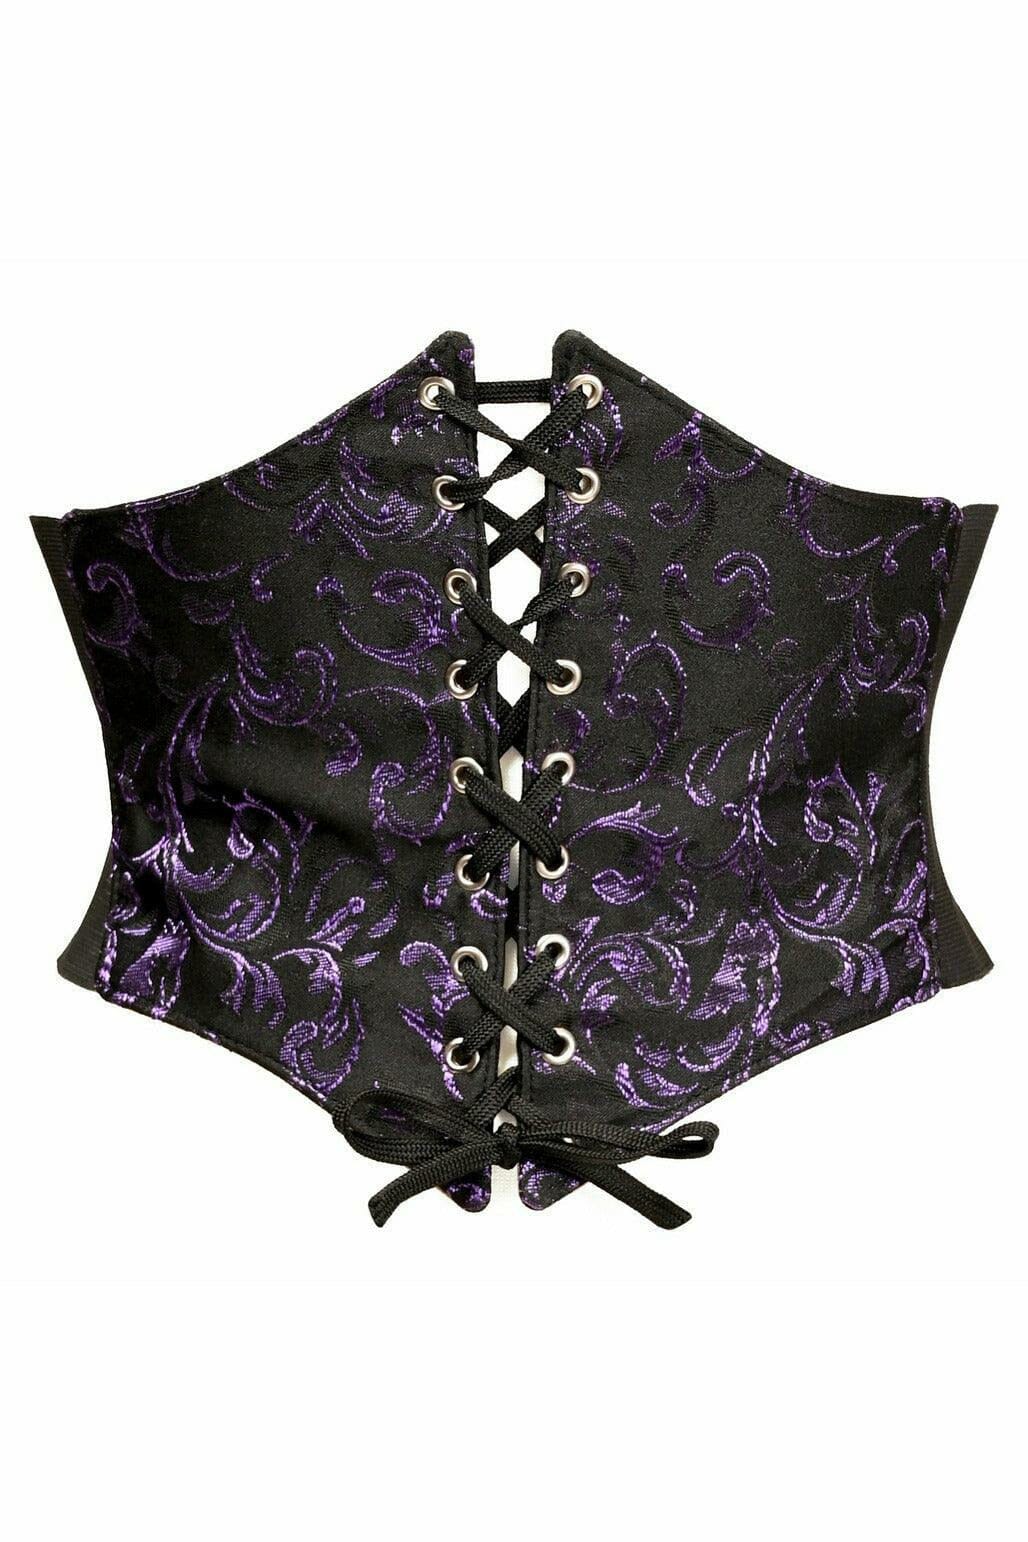 Lavish Black/Purple Brocade Corset Belt Cincher-Corset Belts-Daisy Corsets-Purple-S-SEXYSHOES.COM